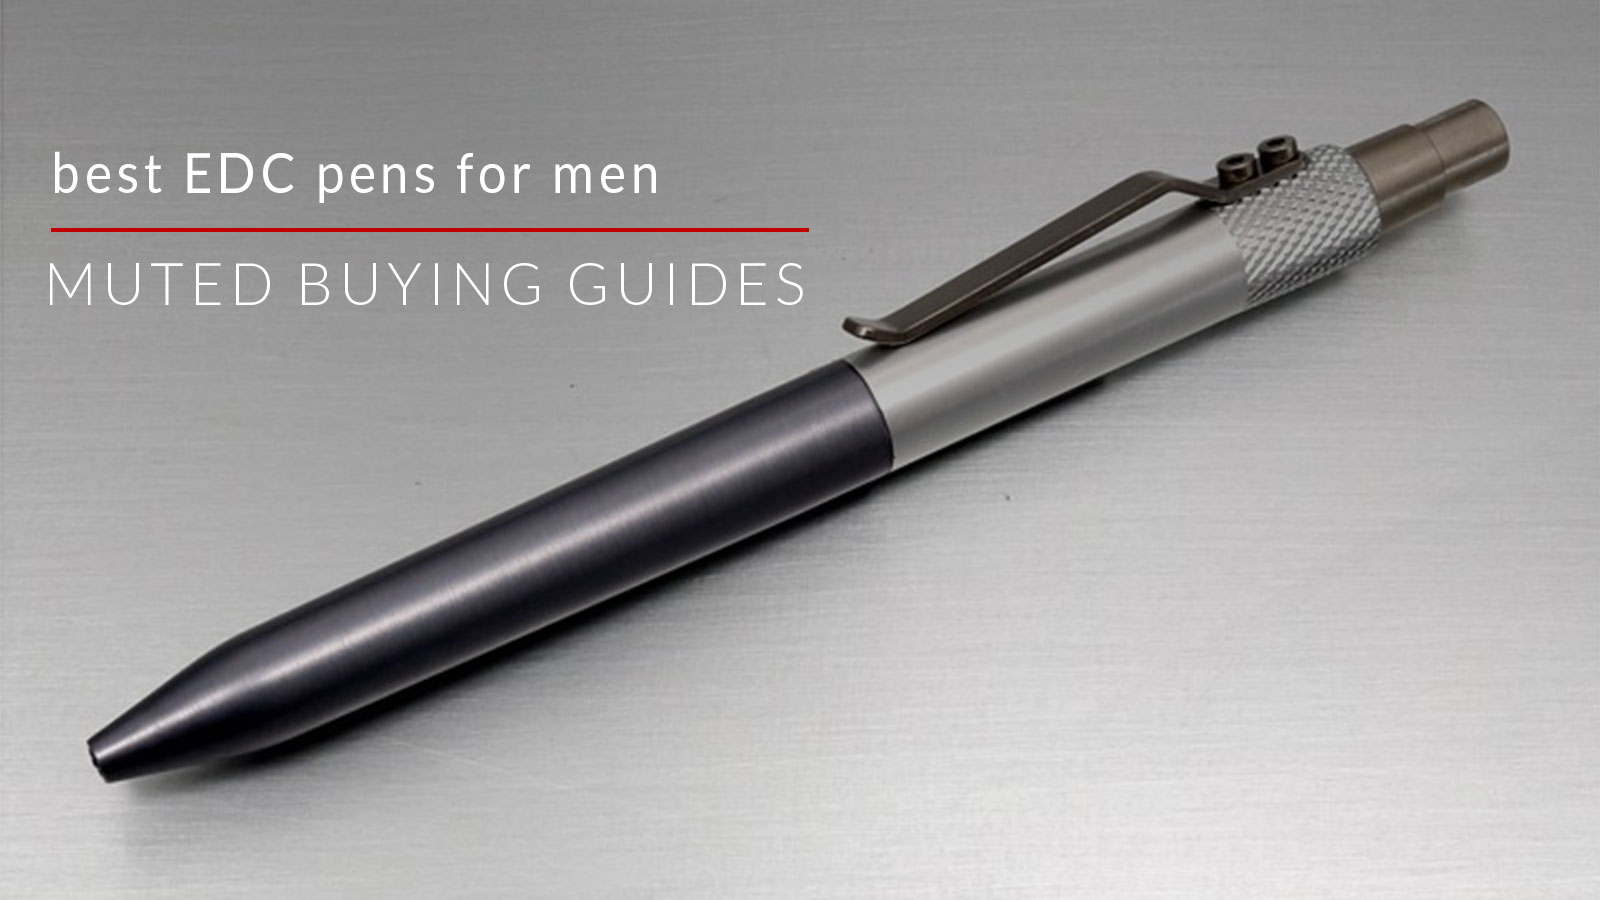 the best edc pens for men